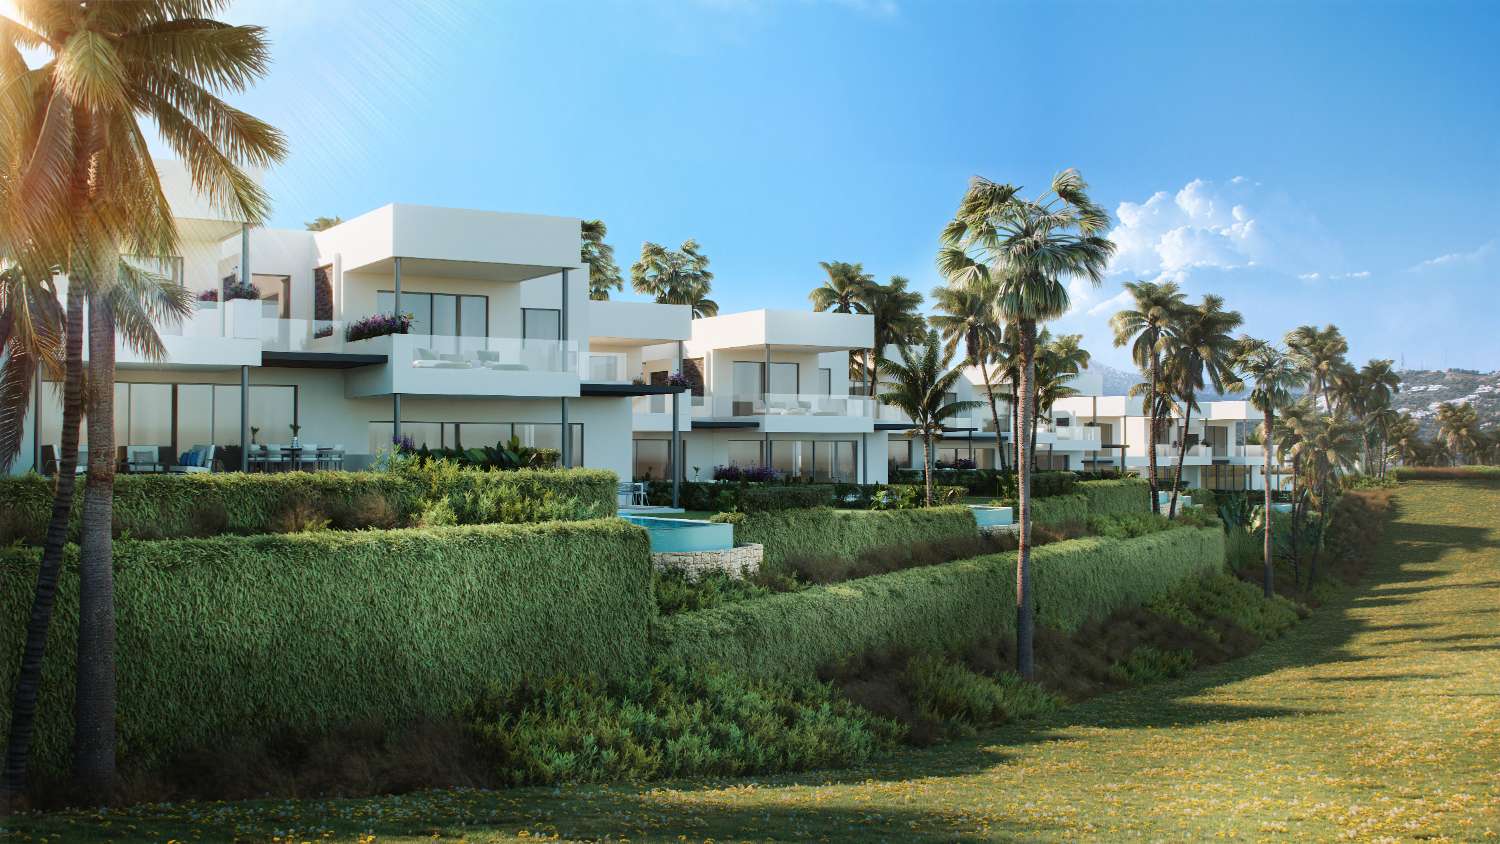 ¡Villas nuevas con vistas del mar en urbanización cerrada con seguridad y resort!